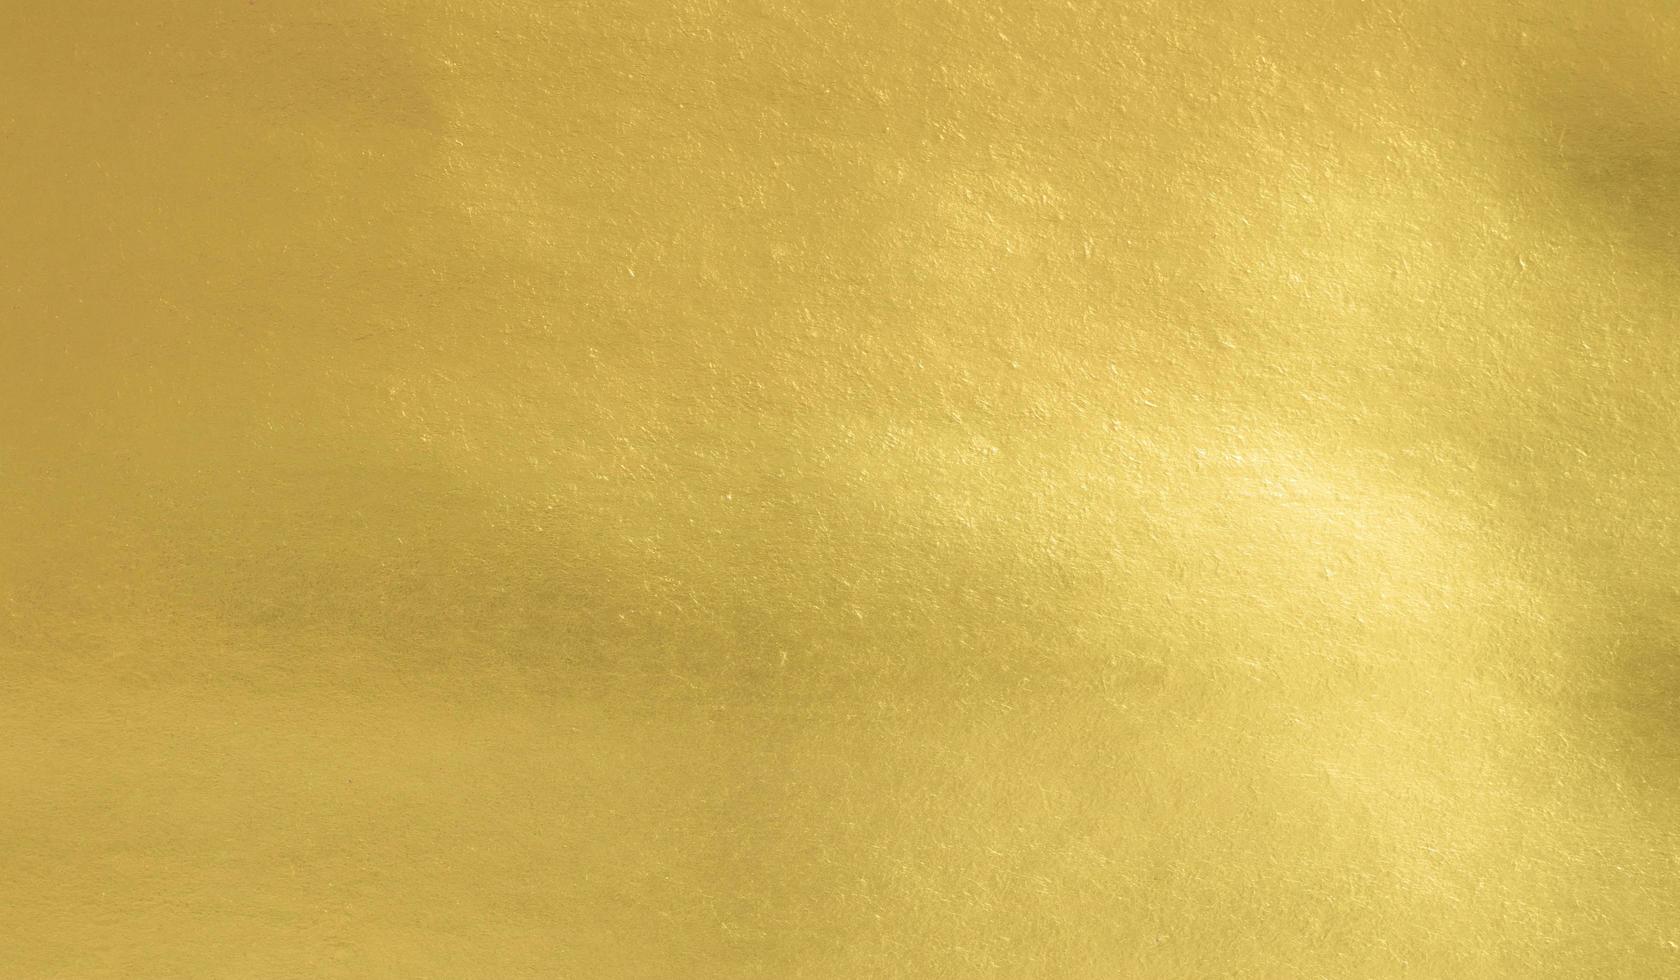 fond de texture papier feuille d'or, feuille de luxe brillante horizontale avec un design unique de papier, style naturel doux pour un design créatif esthétique photo